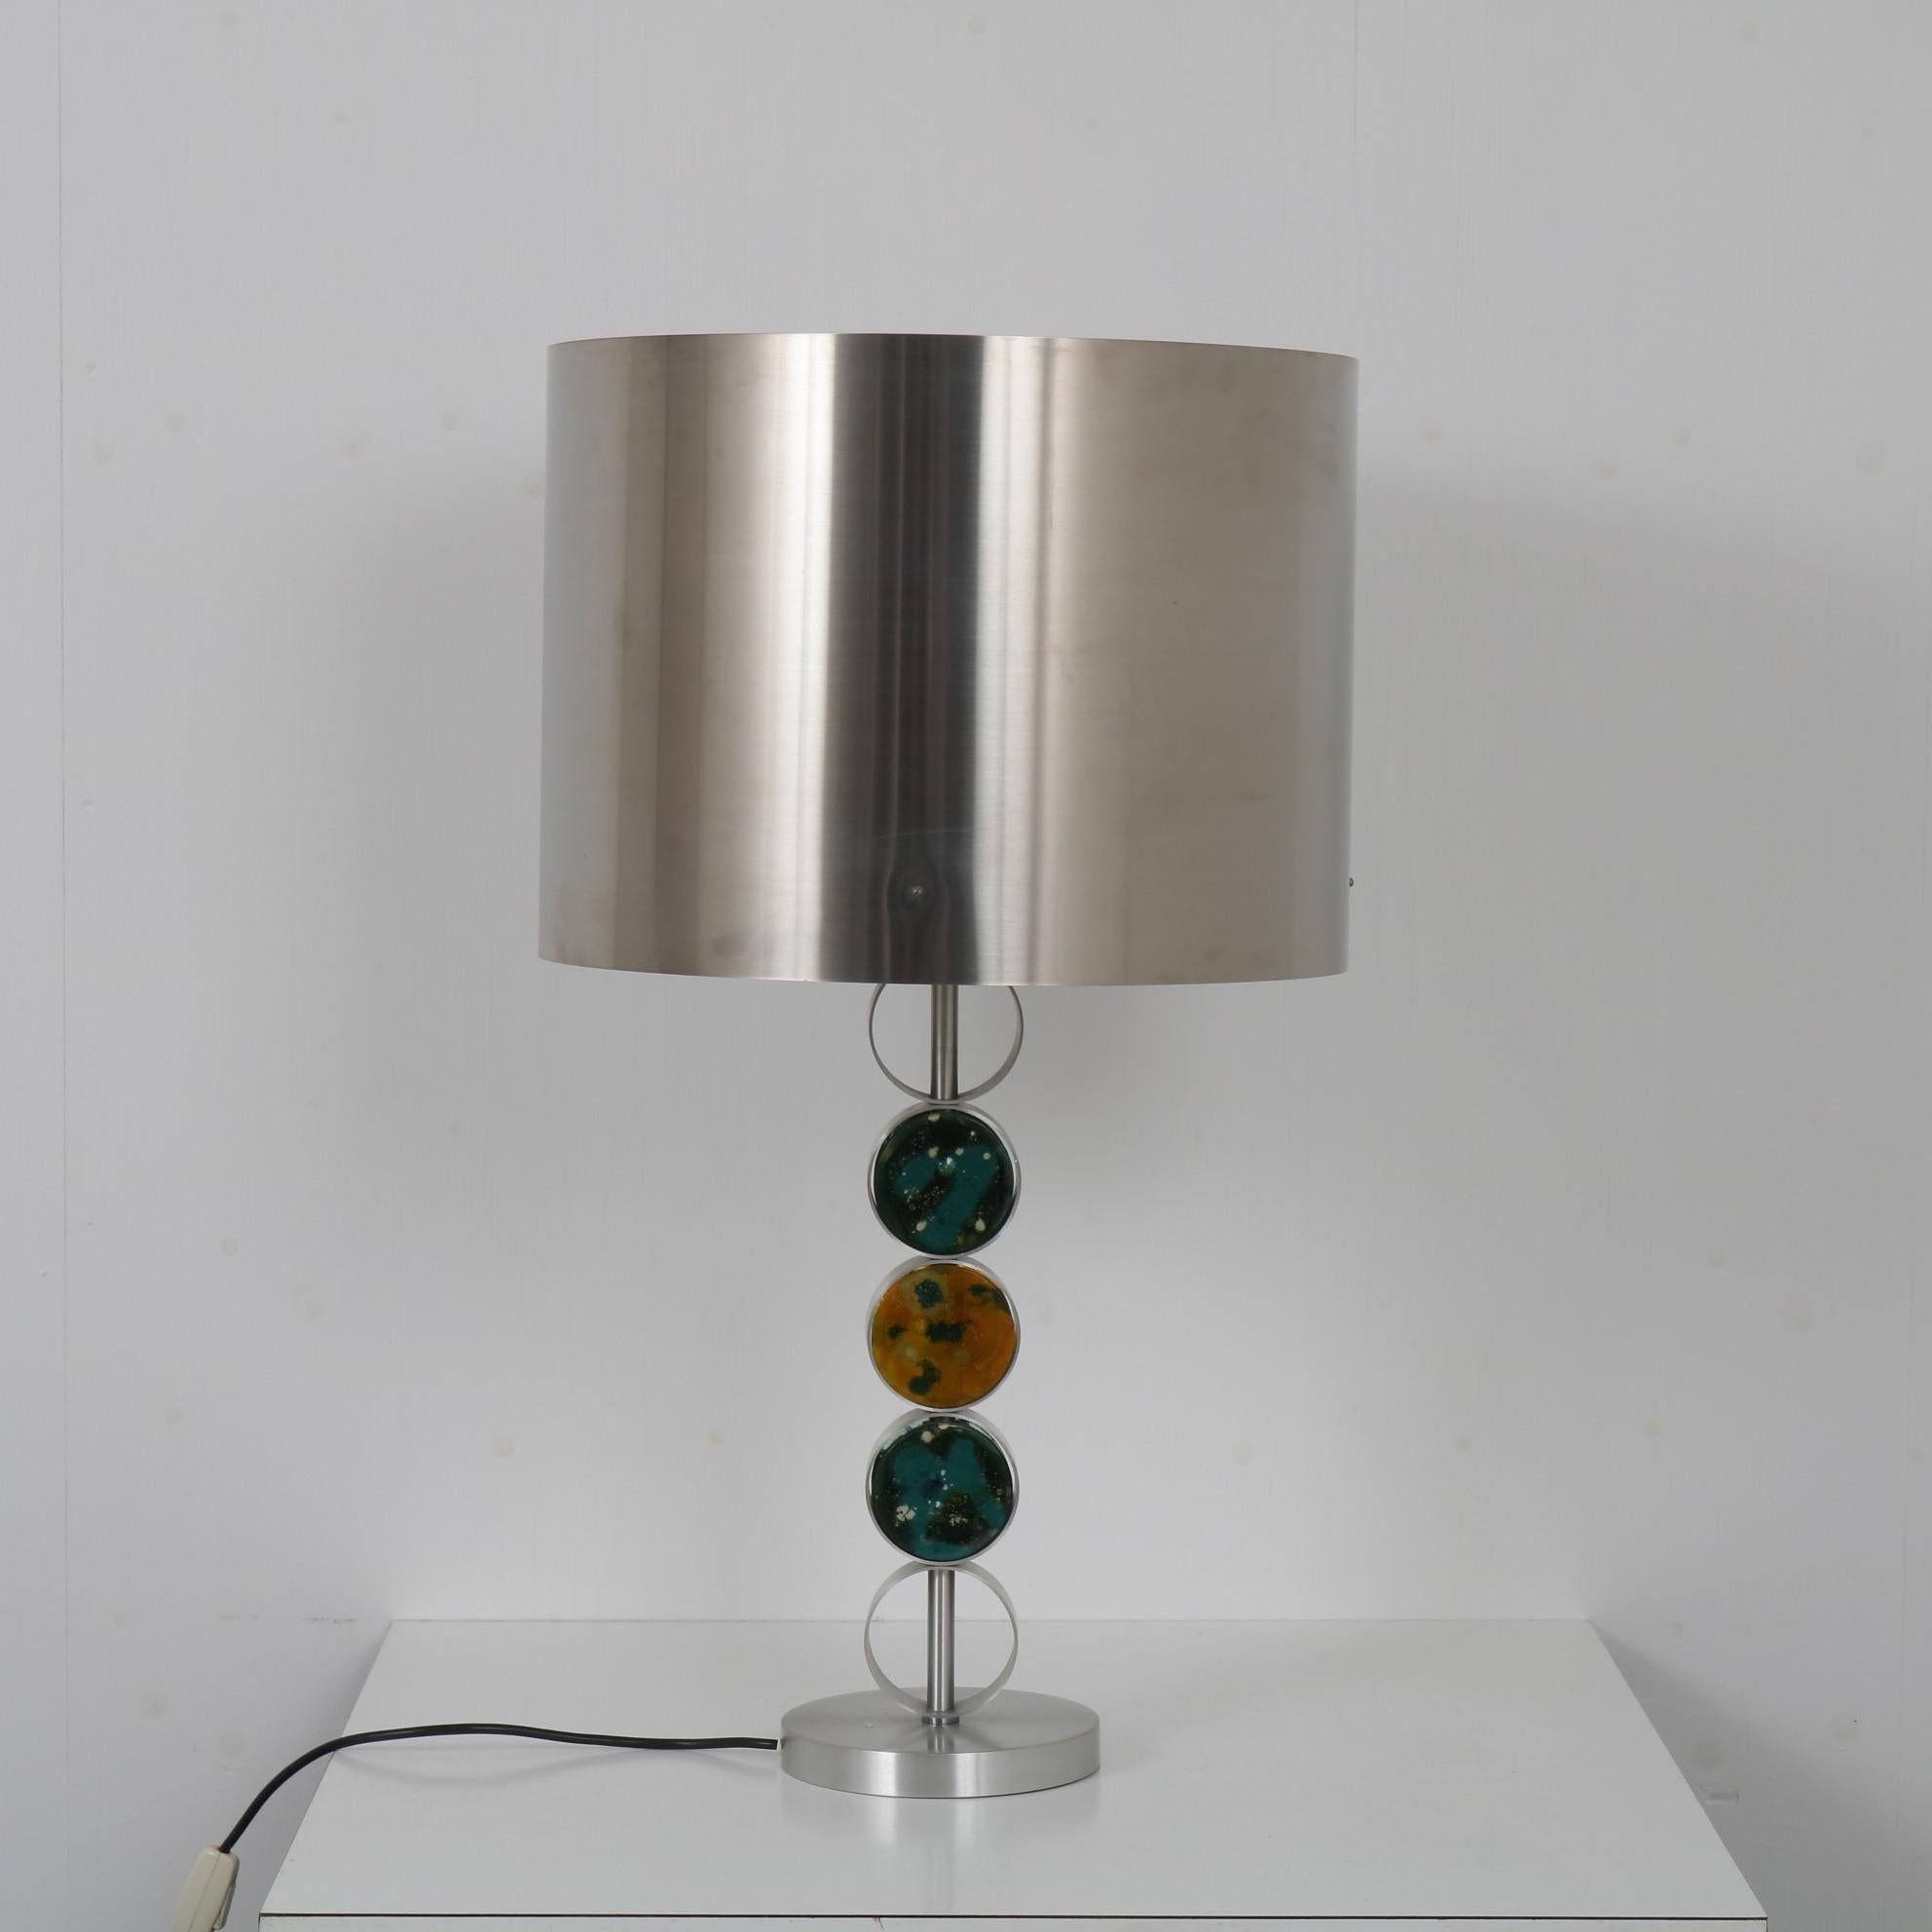 Une magnifique lampe de table conçue par Nanny Still, fabriquée par Raak vers 1970.

La lampe est vraiment bien faite avec des formes arrondies en métal chromé. Le pied rond supporte un bras cylindrique et un capot de forme cylindrique. Le bras